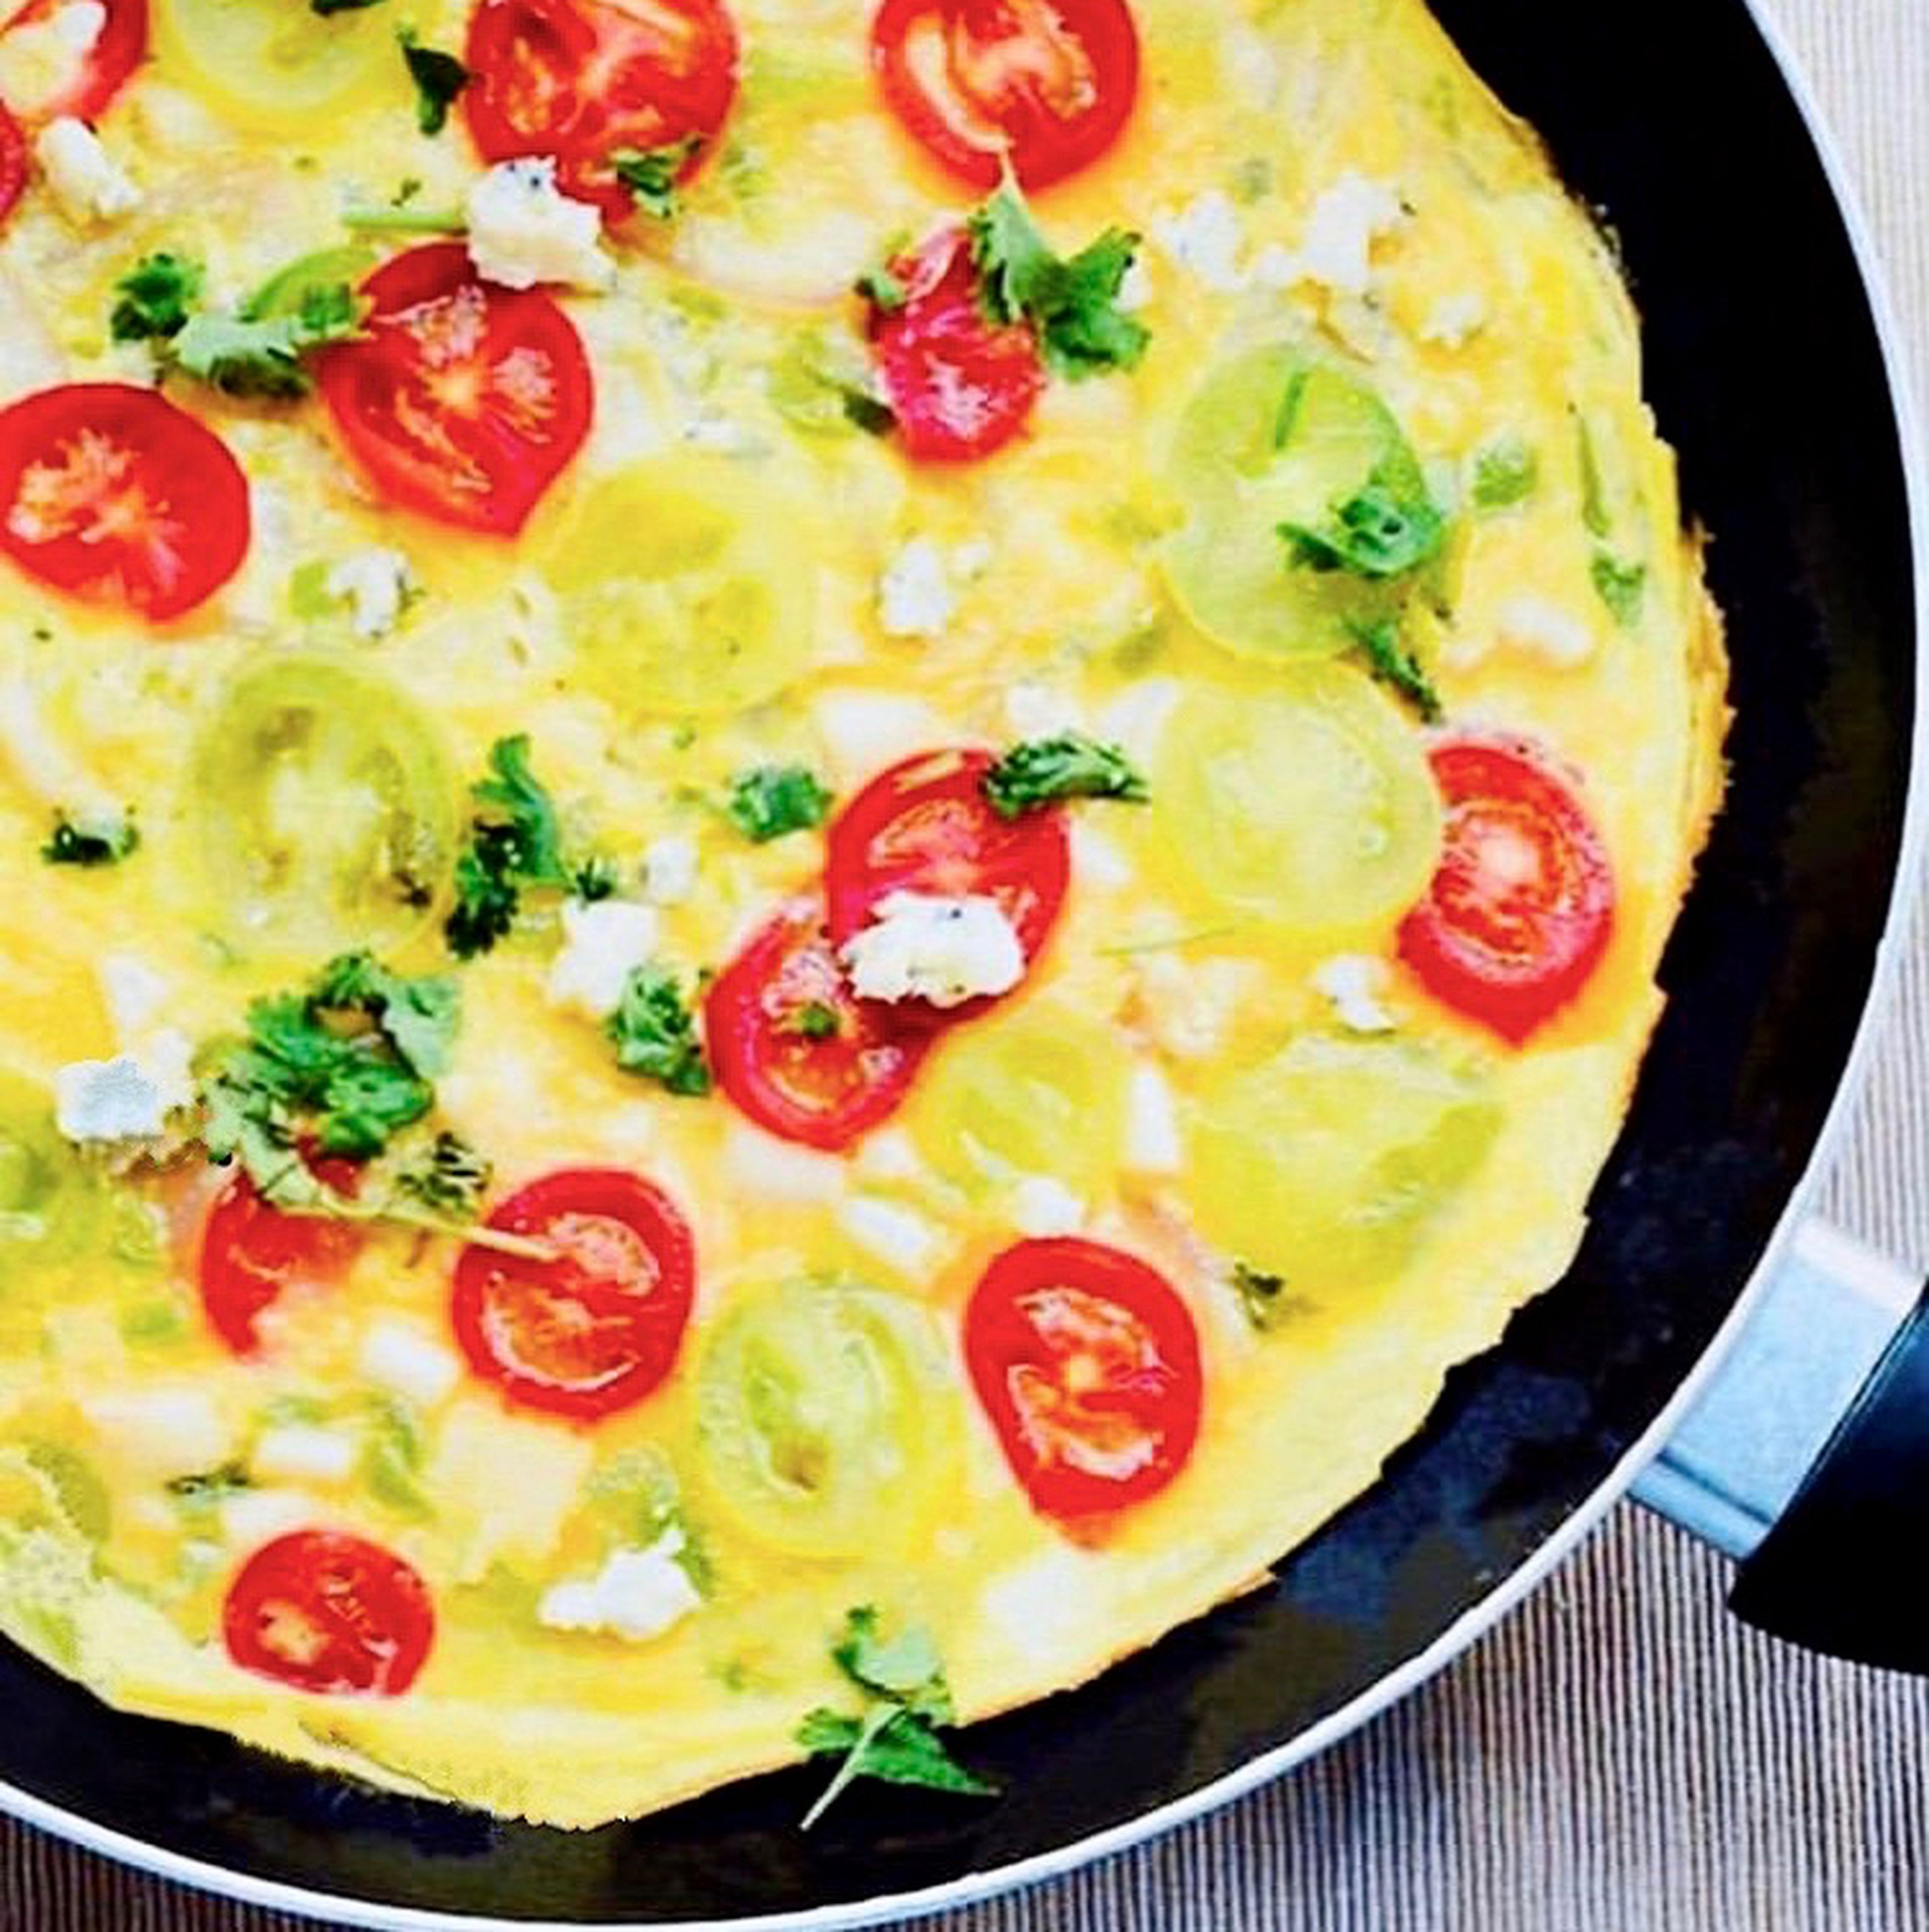 Easy-peasy open-faced omelette